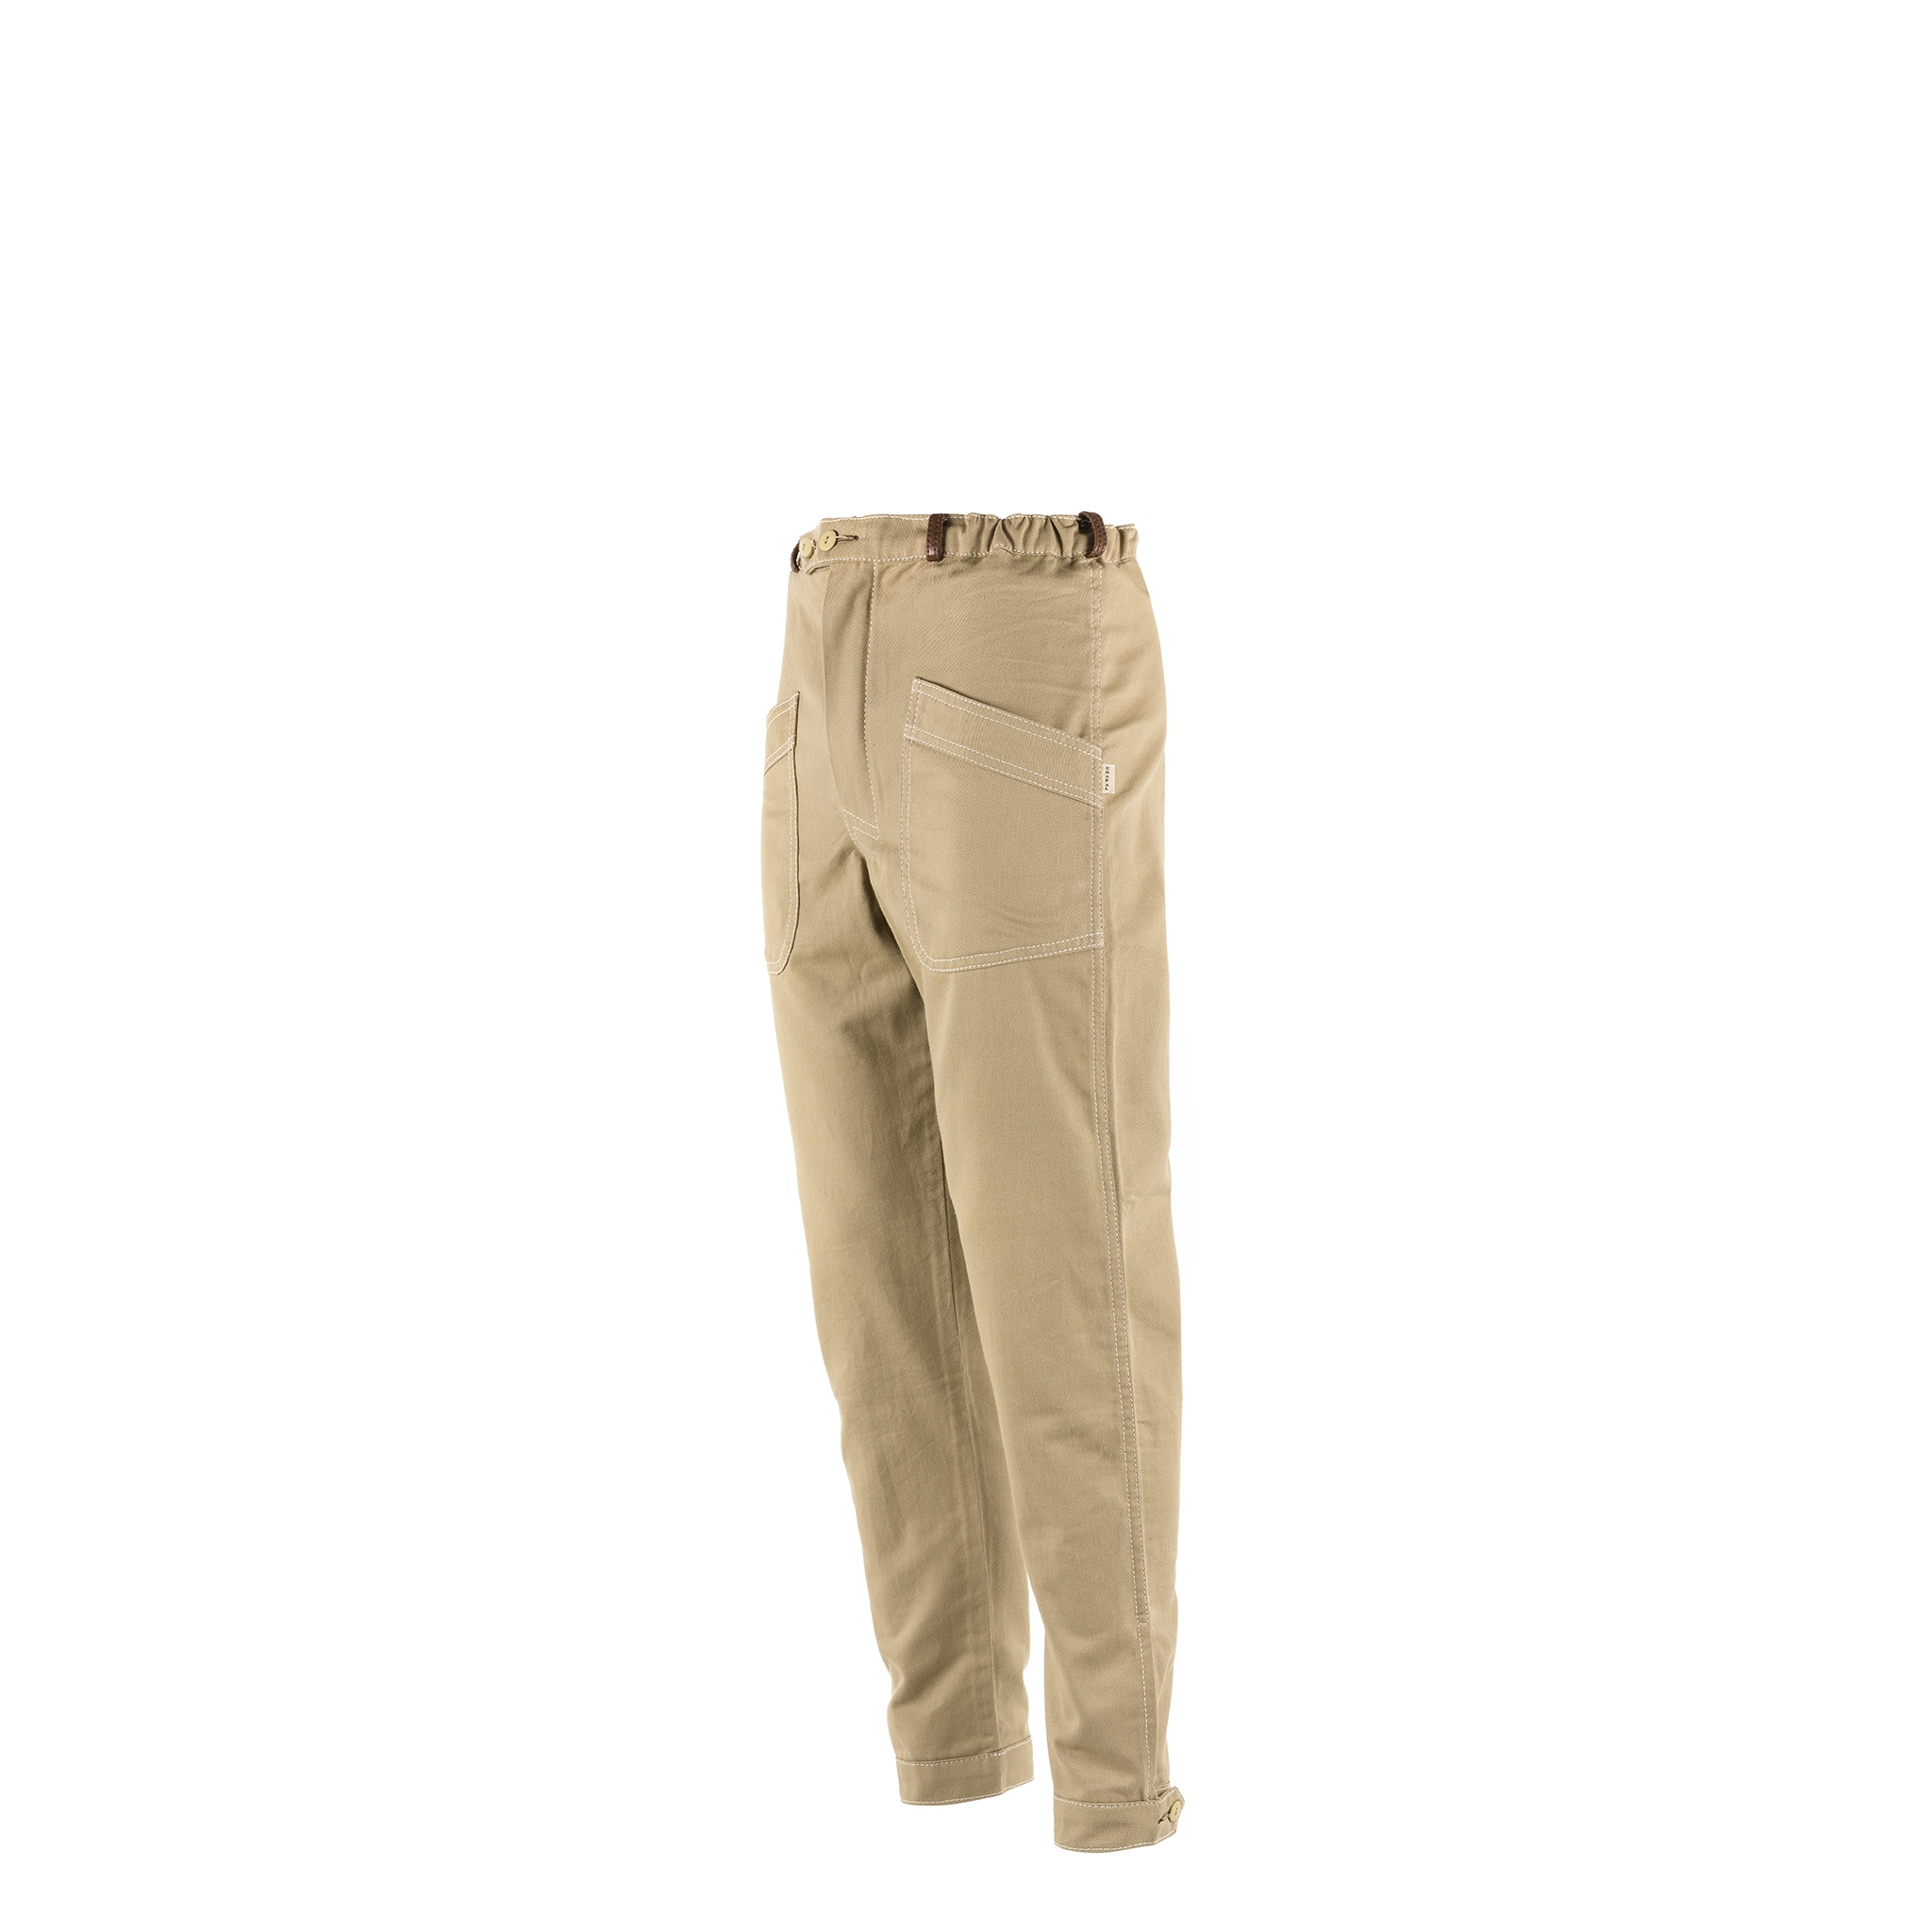 Pantalon Pilote - Gabardine de coton - Couleur beige